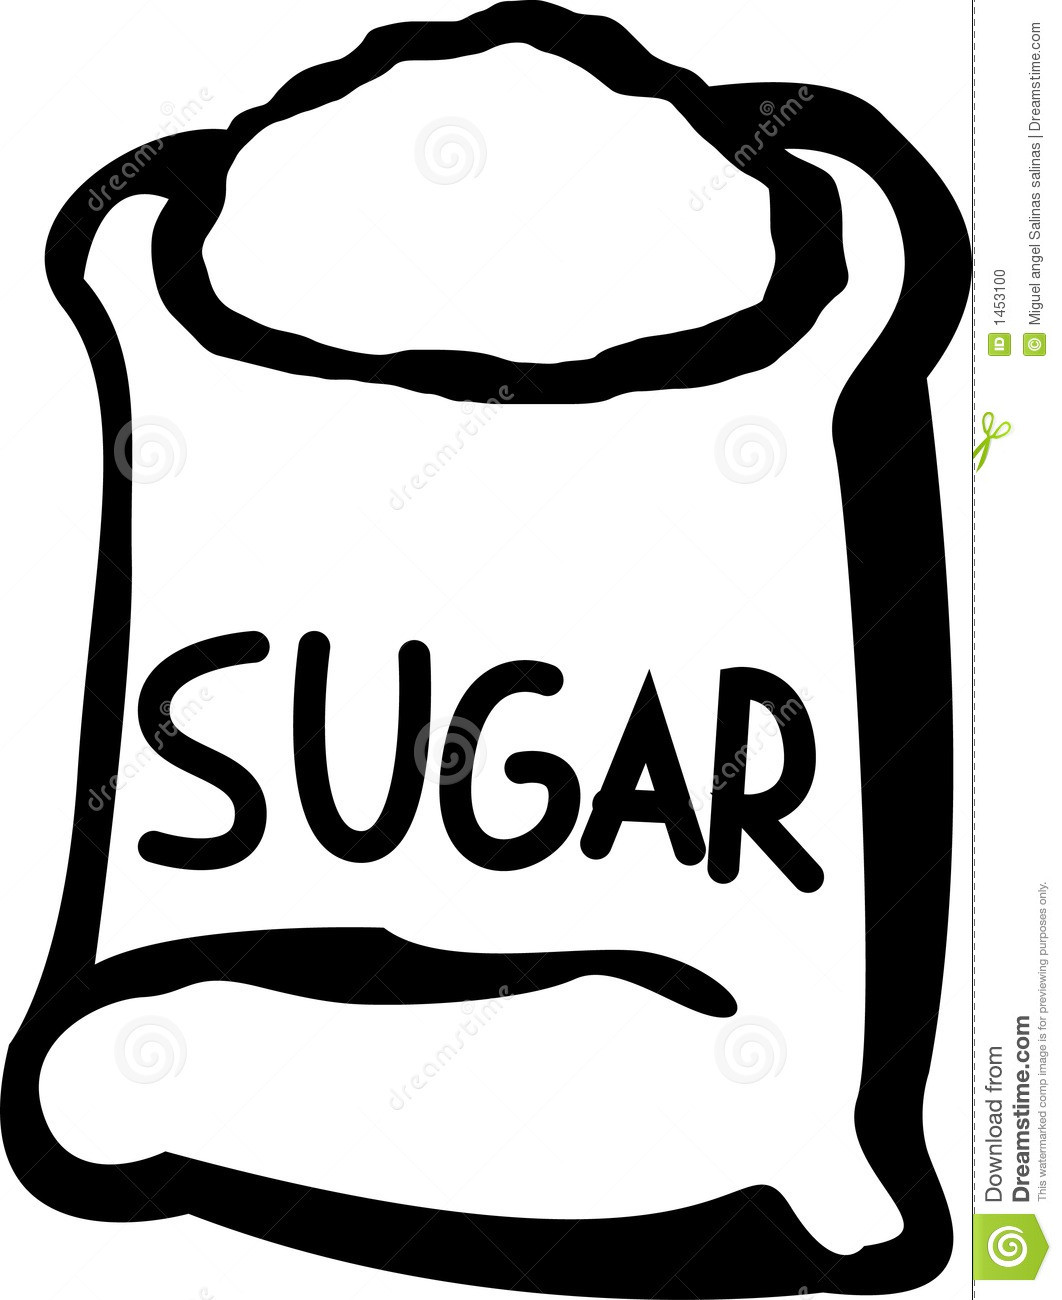 sugar clipart - Sugar Clip Art